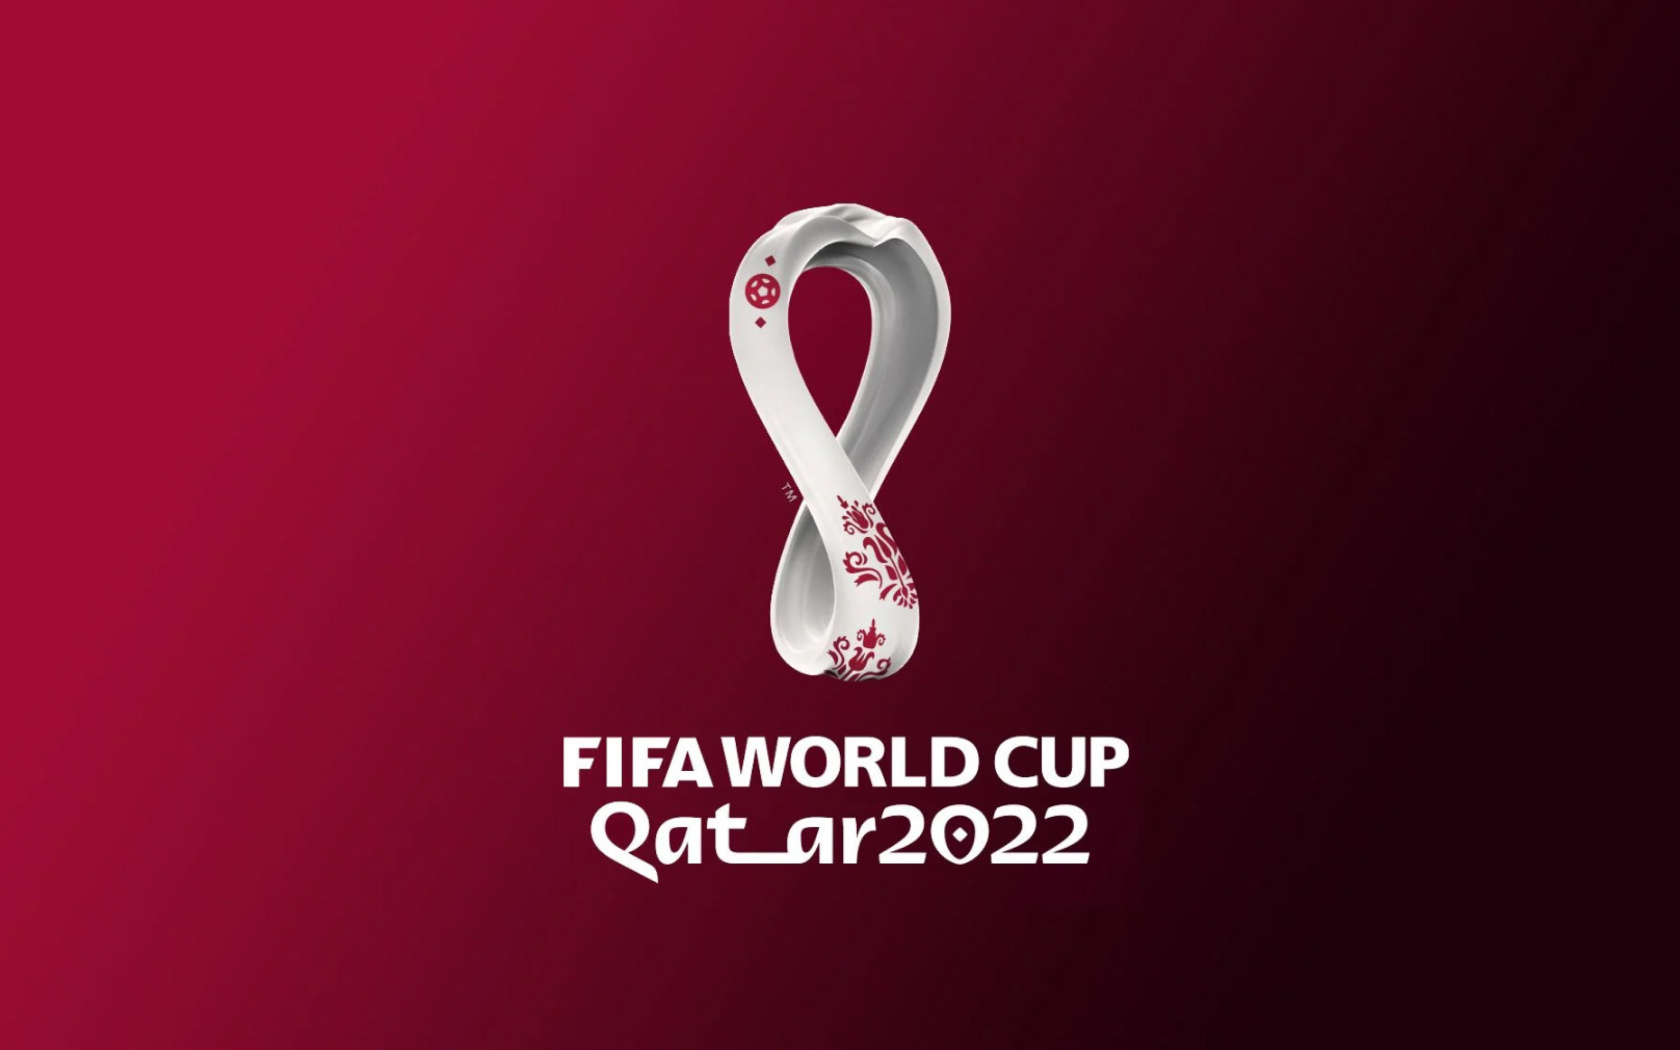 Das World Cup Qatar 2022 Wallpaper 1680x1050